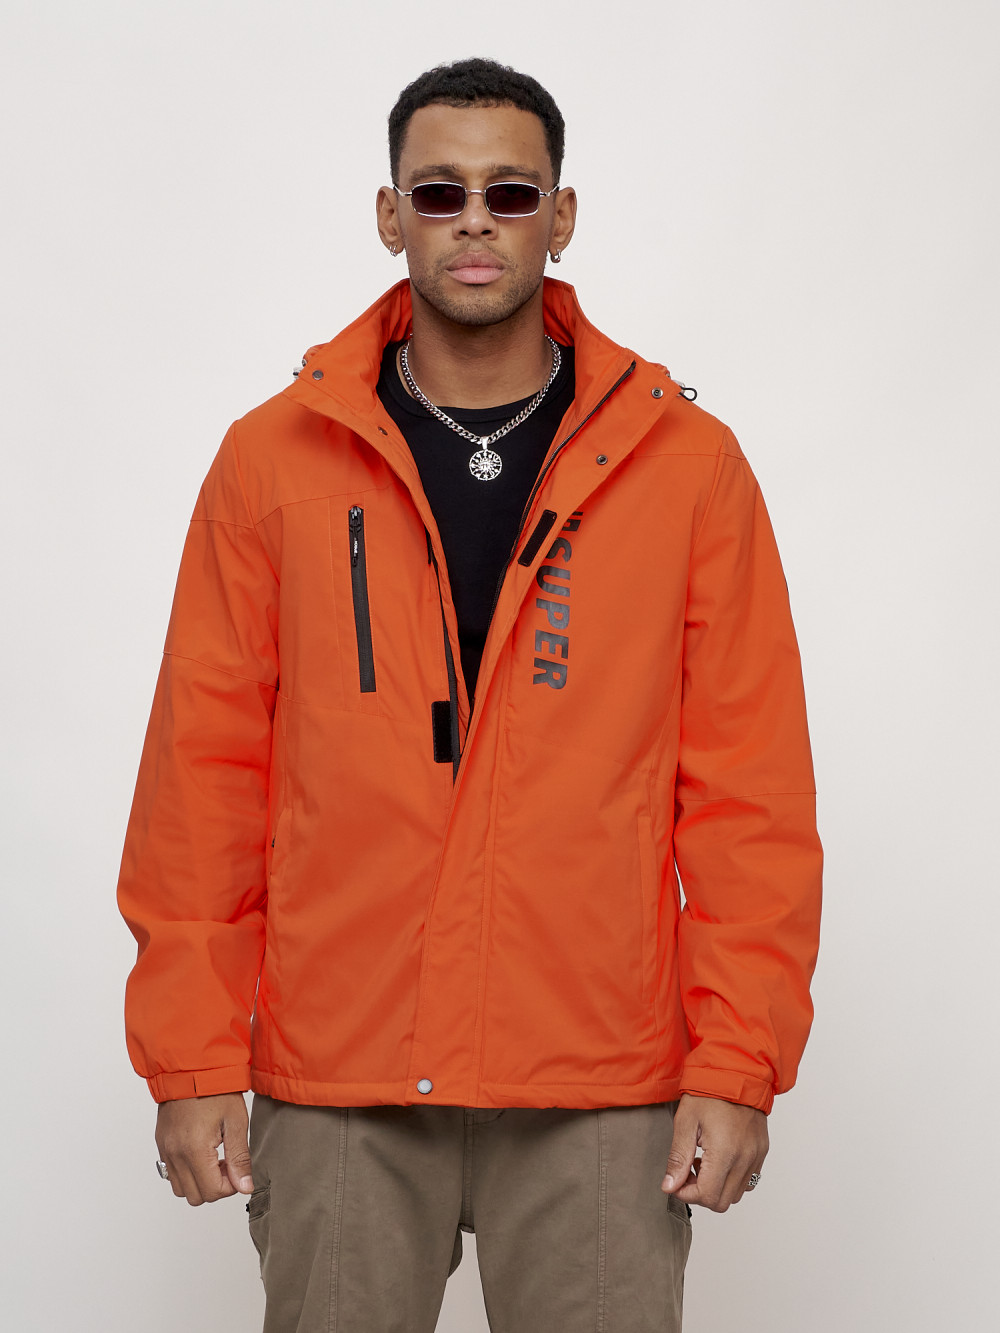 Купить оптом Куртка спортивная мужская весенняя с капюшоном оранжевого цвета 88026O в Казани